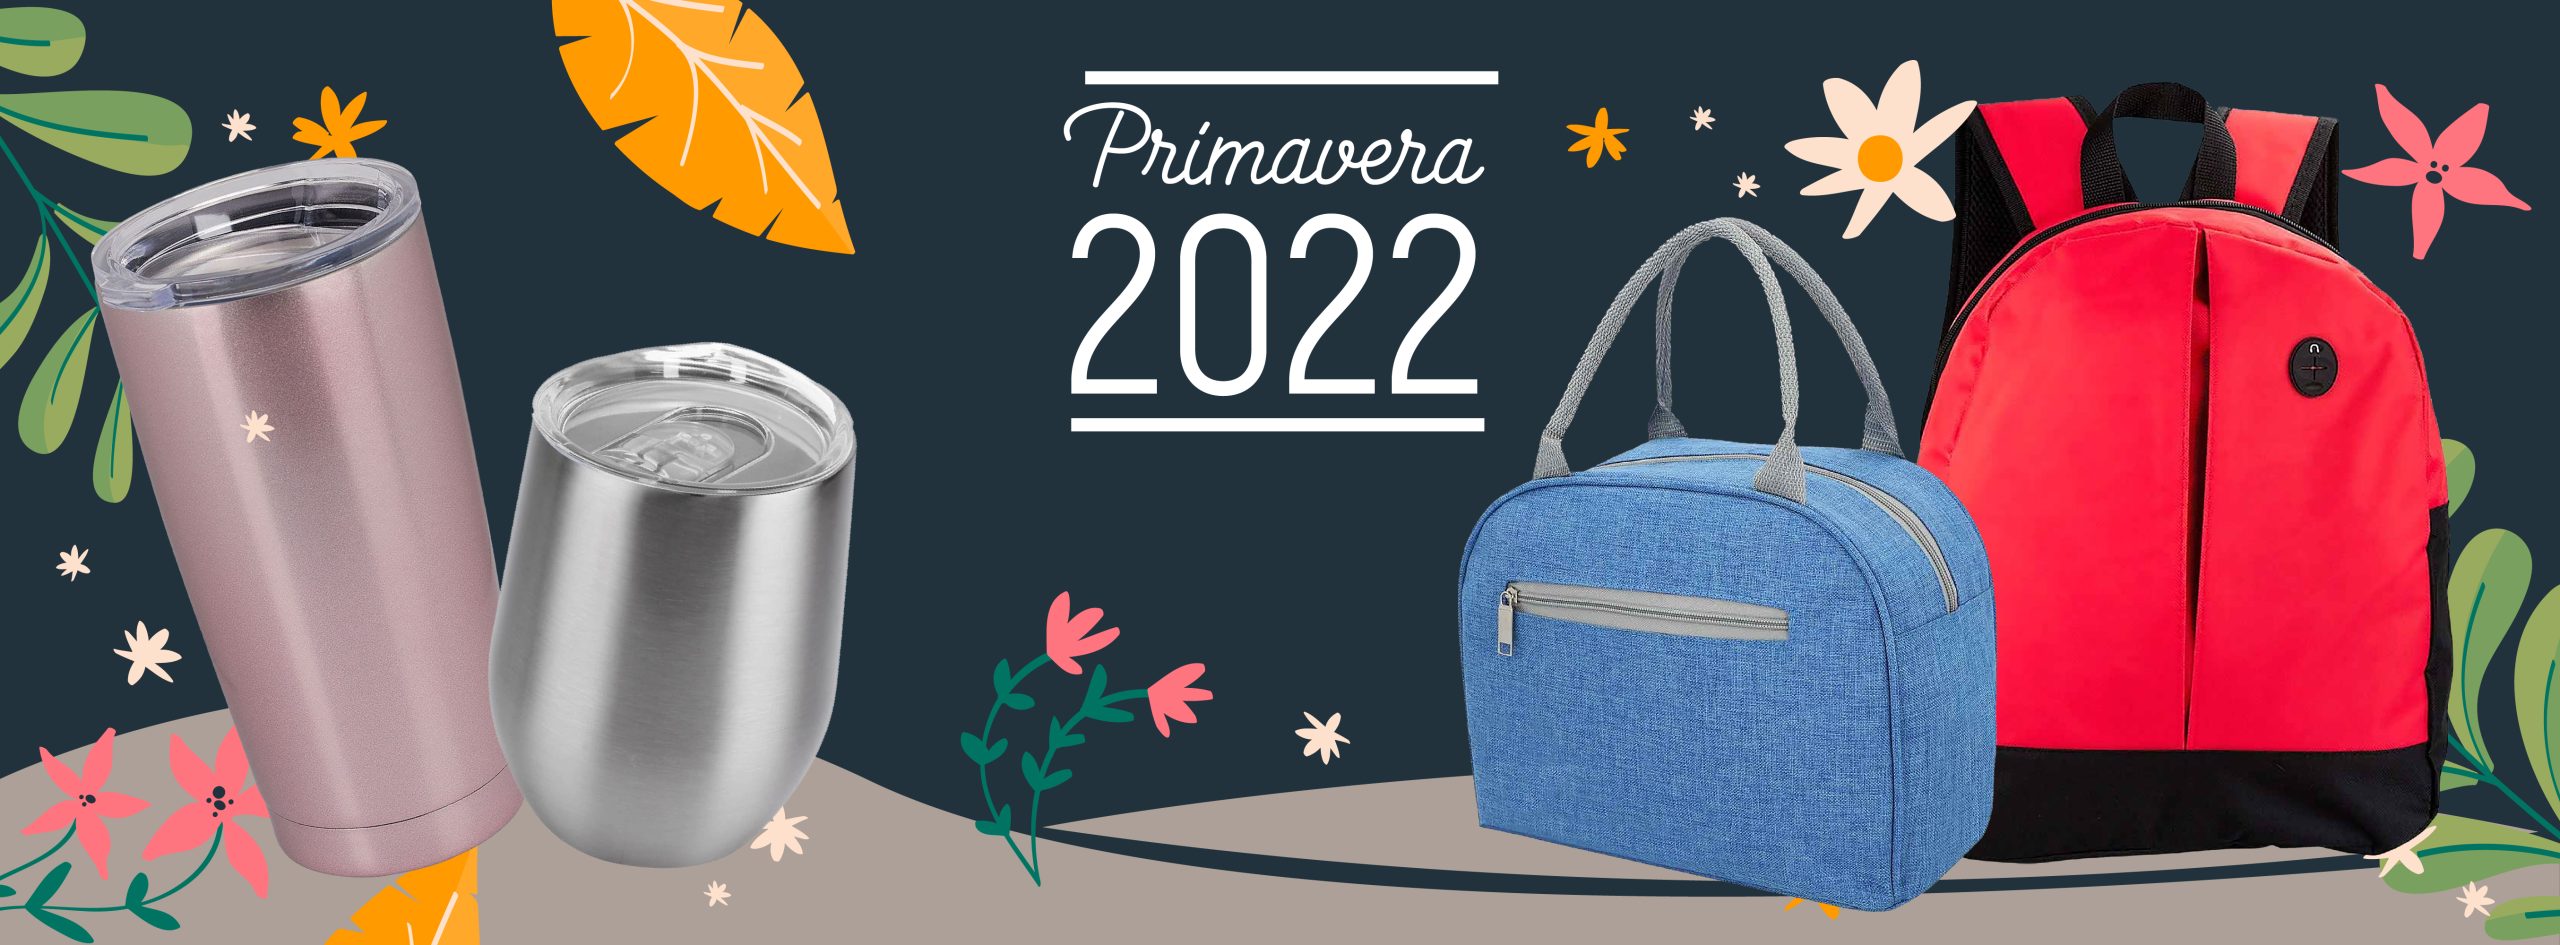 PROMONOVA-PROMOCIONALES-ARTICULOS-NUEVOS-2022